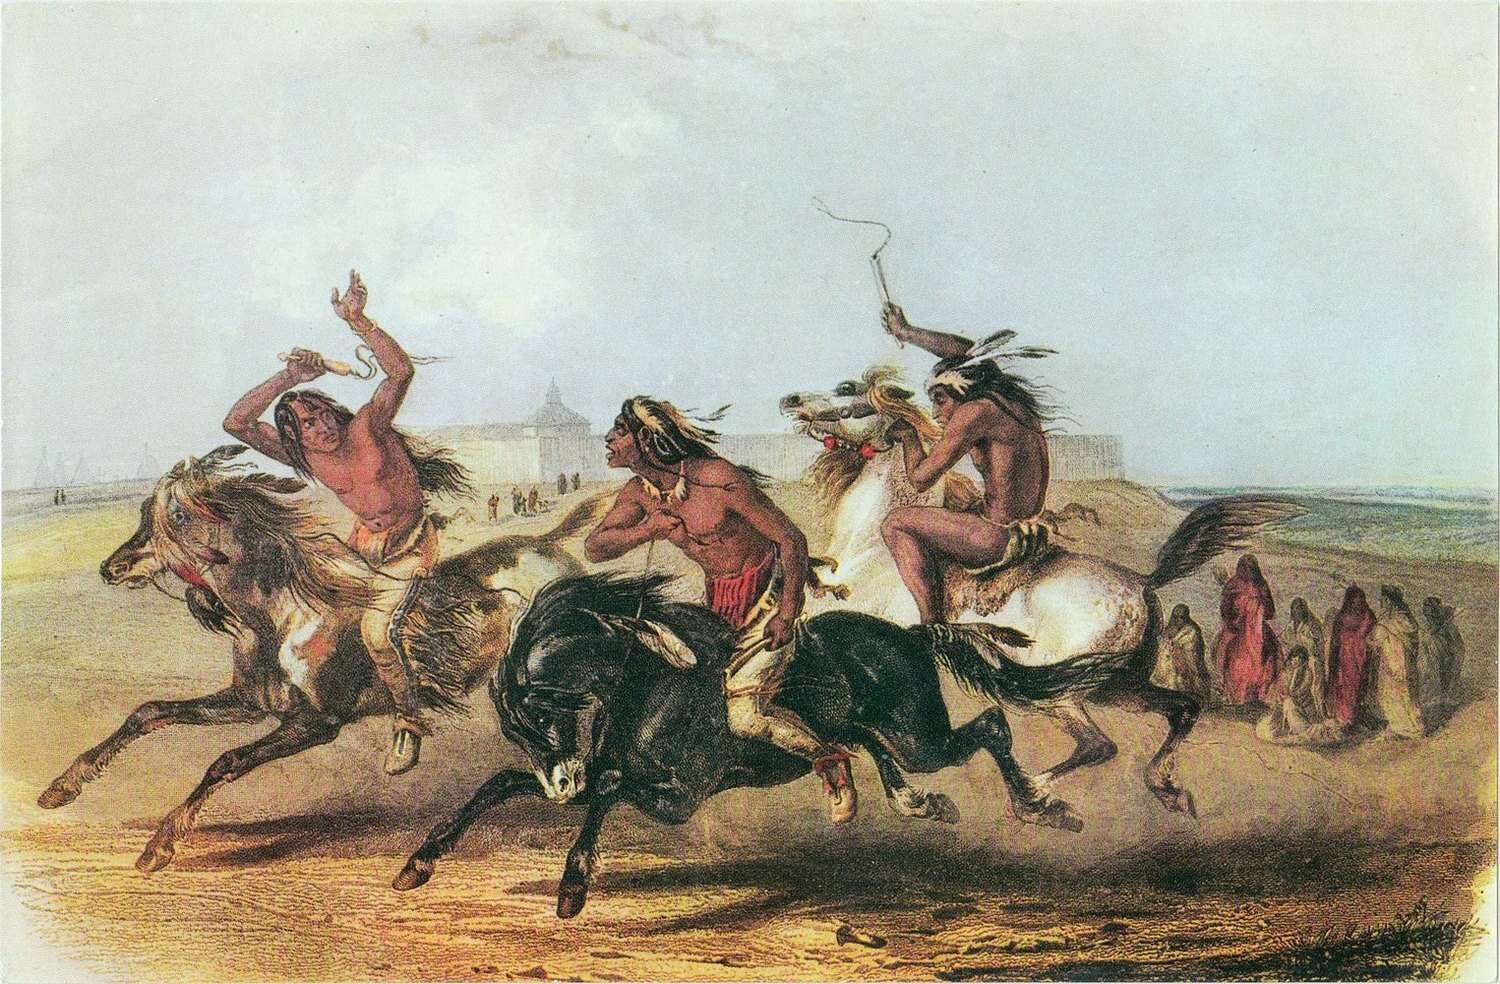 Sioux Horse Races